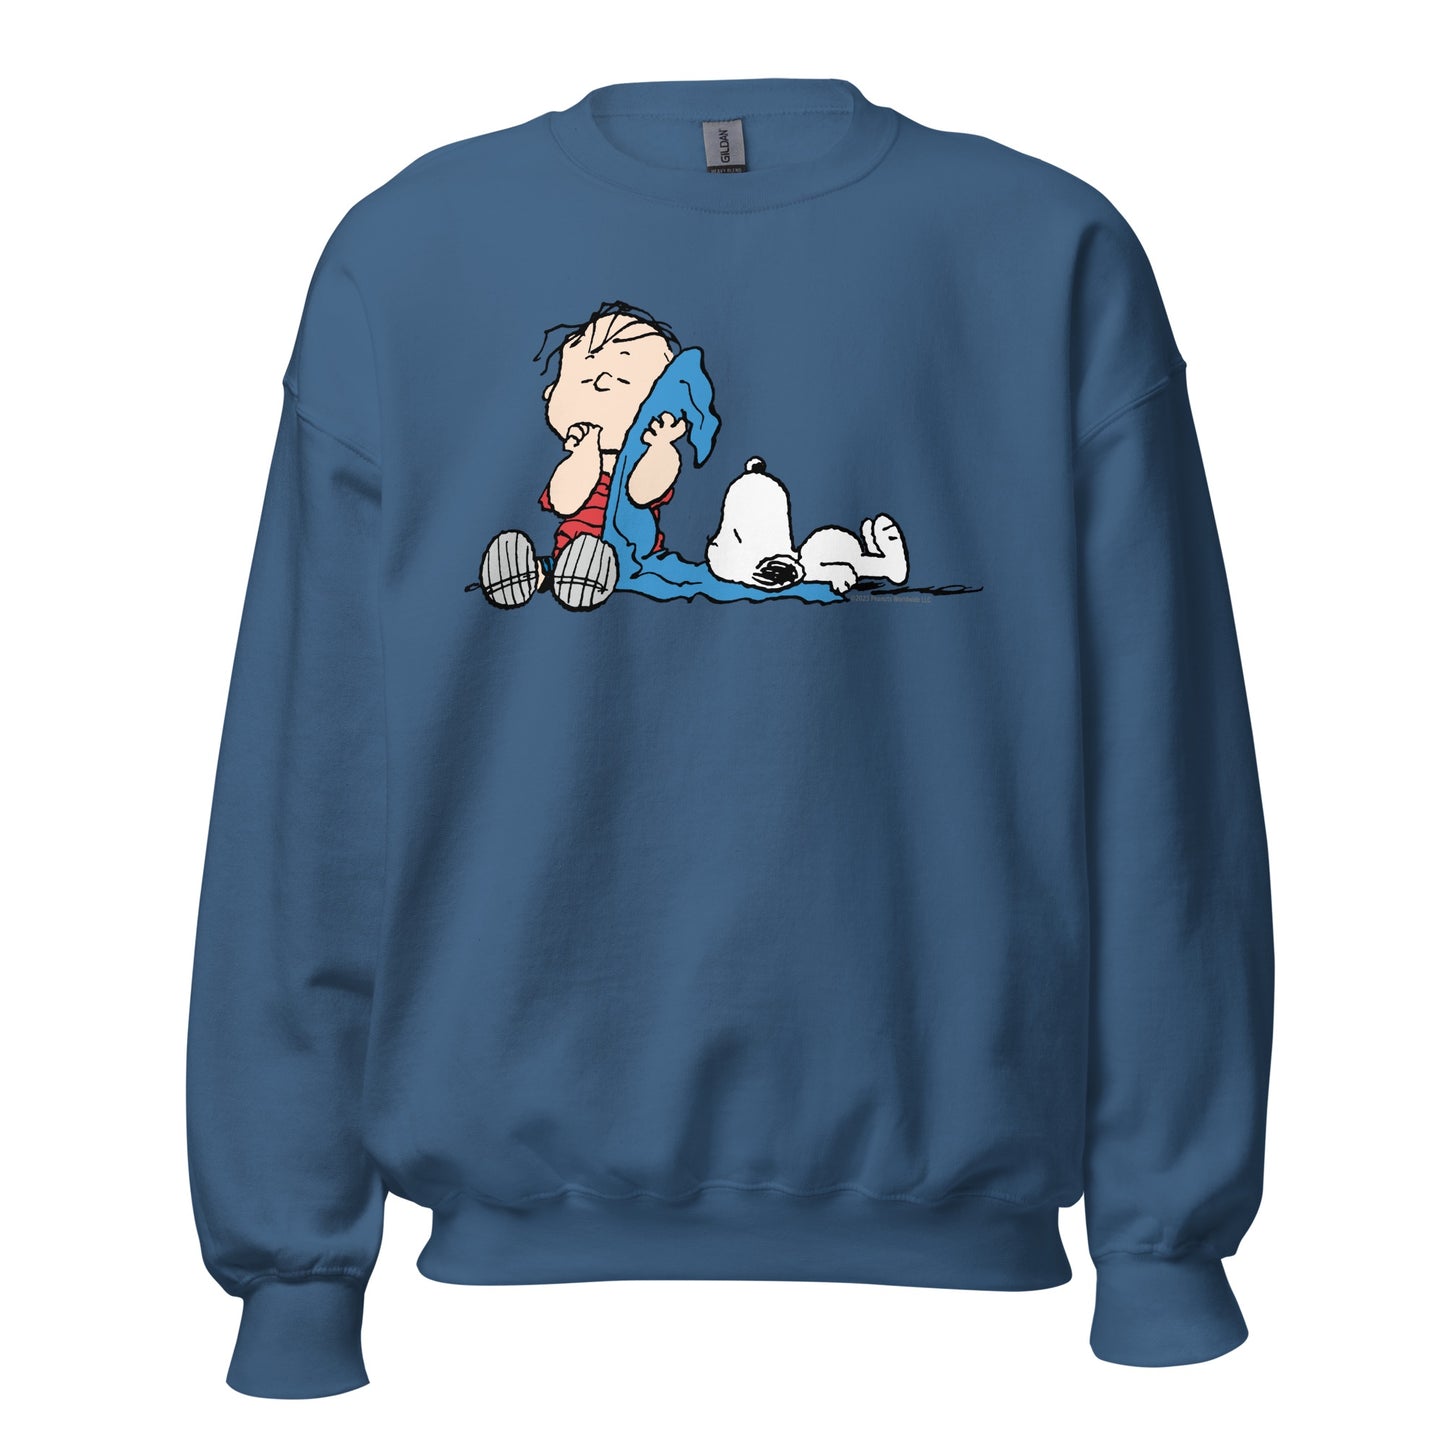 Linus & Snoopy Blanket Adult Sweatshirt